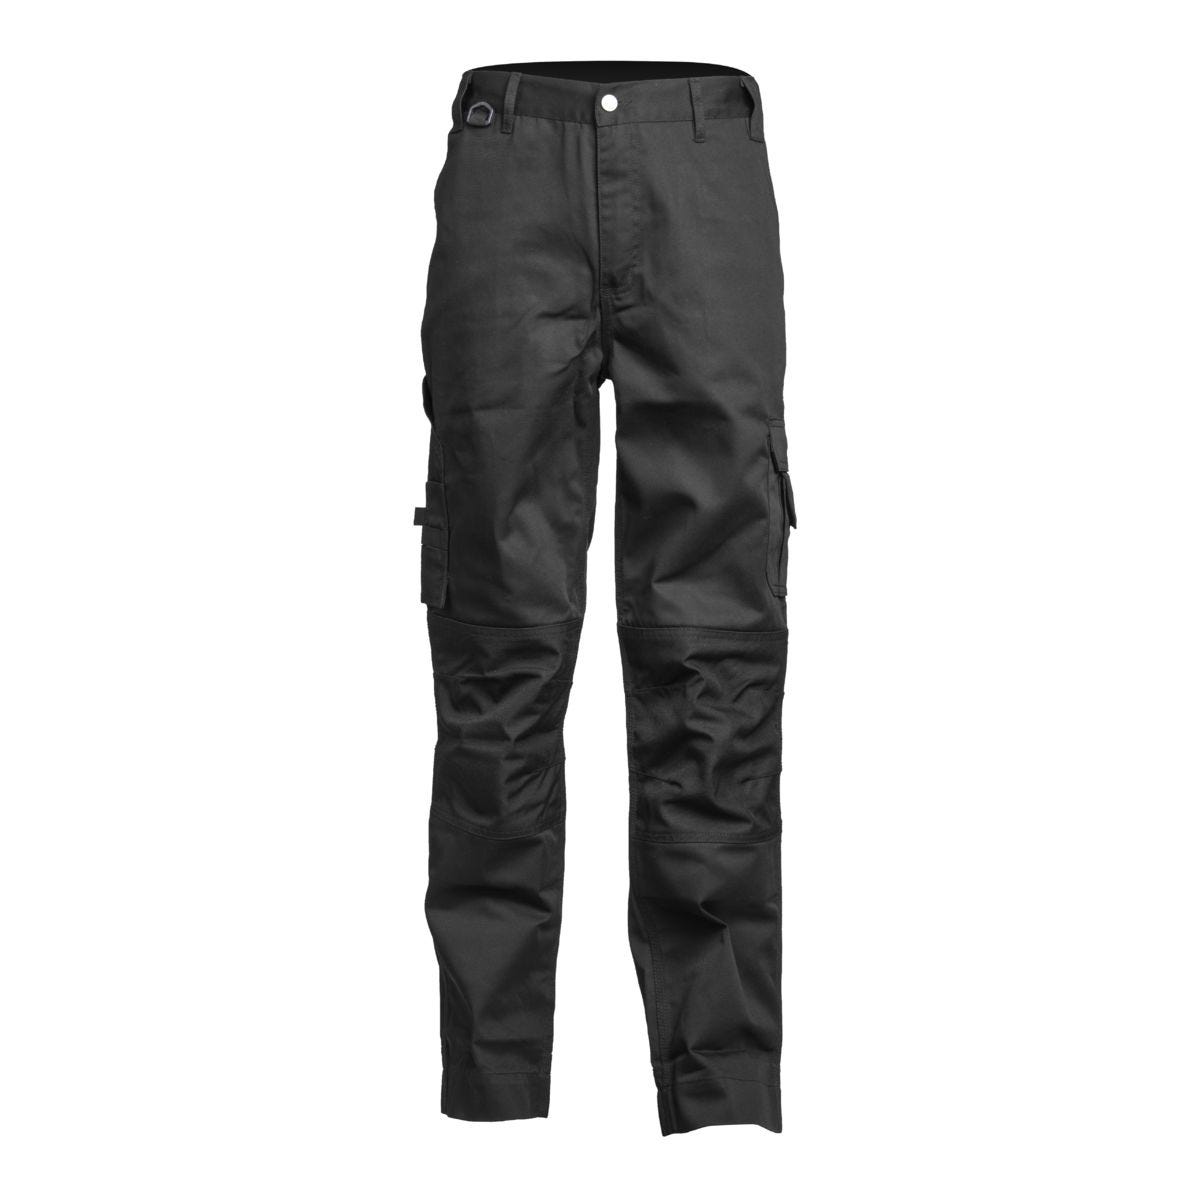 Pantalon CLASS noir - COVERGUARD - Taille XS 0